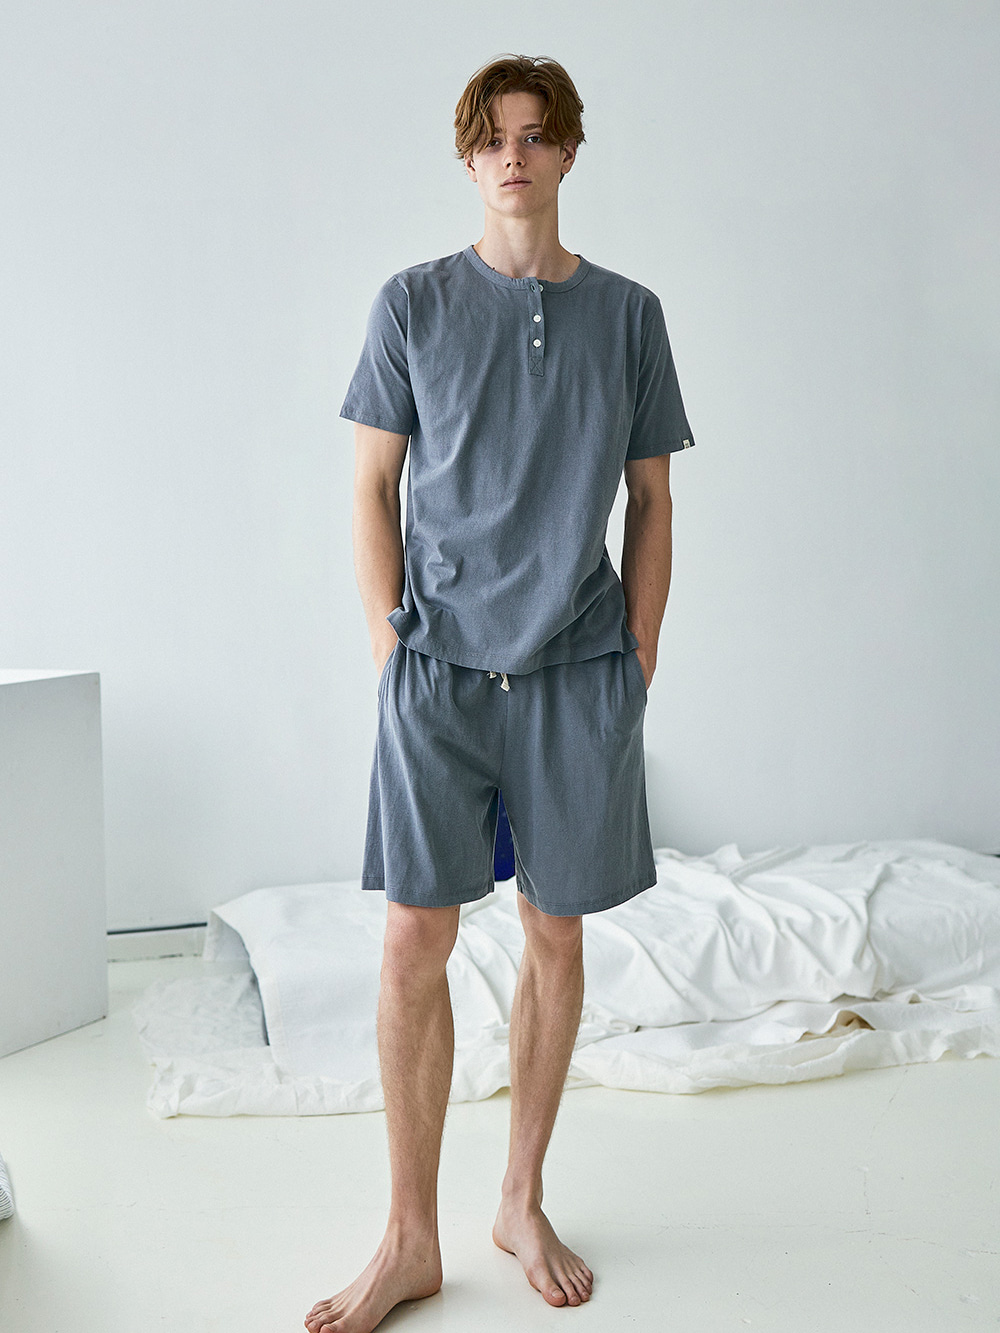 코즈넉 KOZNOK - 피그먼트 조거팬츠 남자 잠옷 파자마 홈웨어 남성 라운지웨어 잠옷반바지